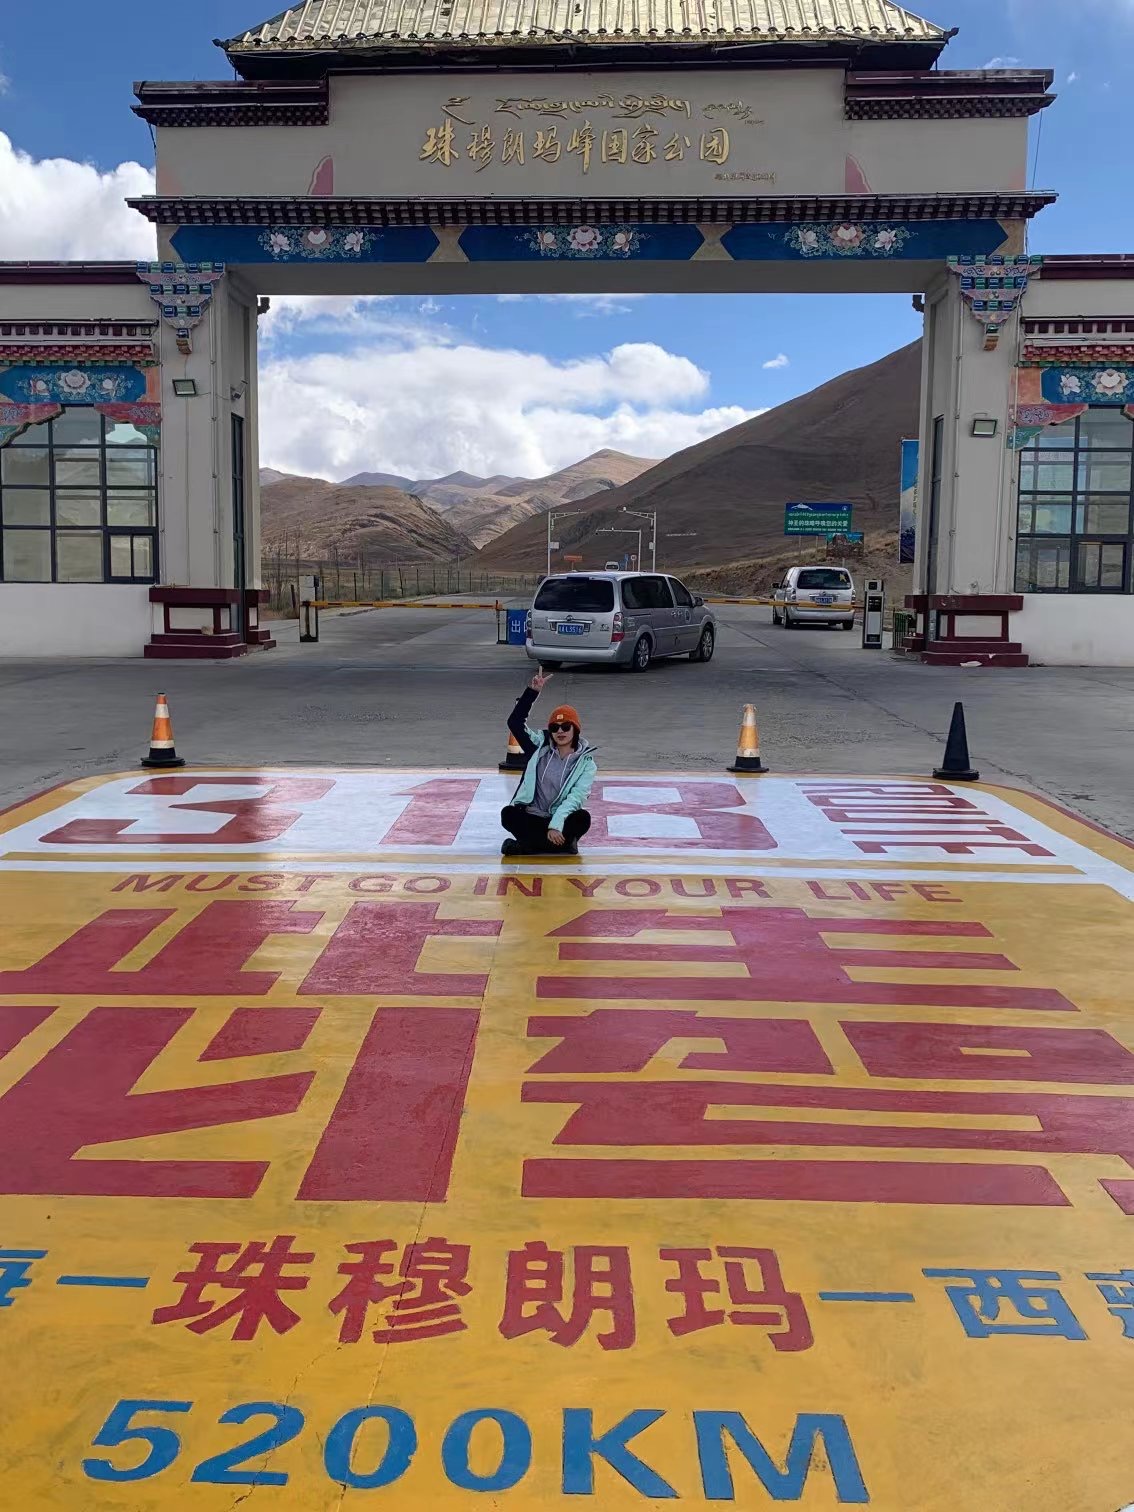 坐火车去西藏，沿途能看到哪些风景？